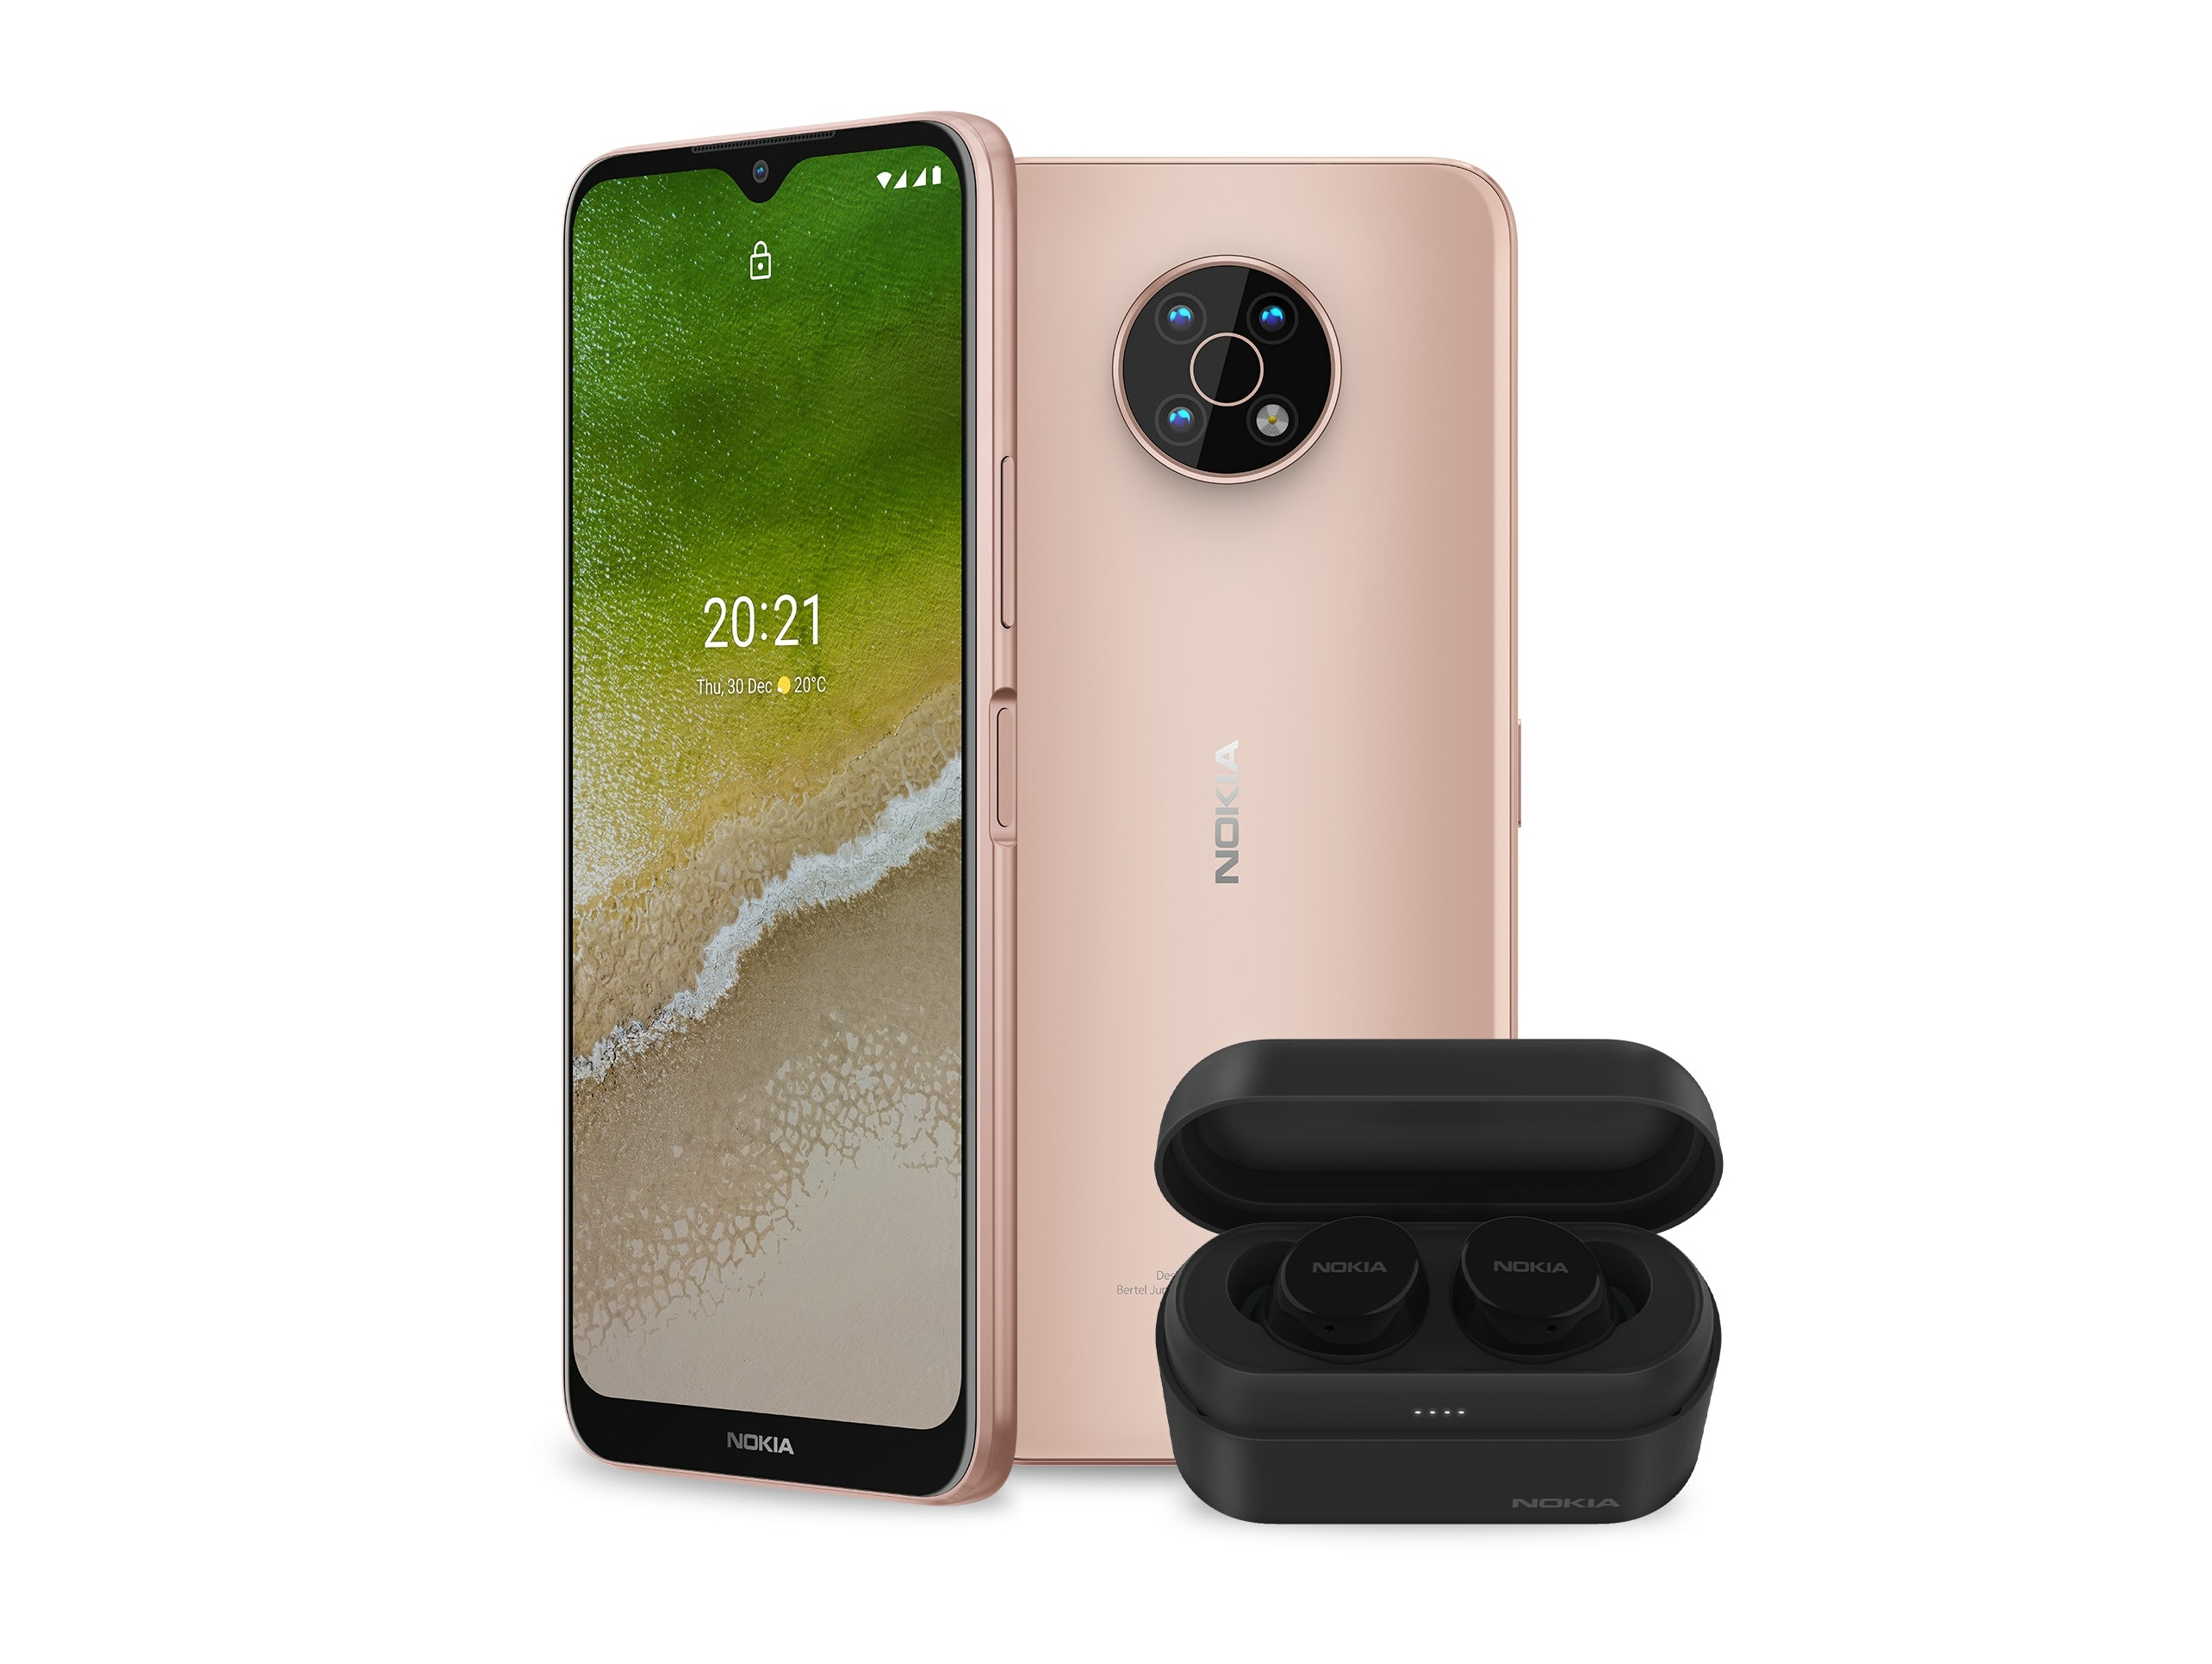 Інсайдер розсекретив Nokia G50 5G до анонсу: два забарвлення, бічний сканер, потрійна камера, чіп Snapdragon 480 і цінник в районі 230 євро